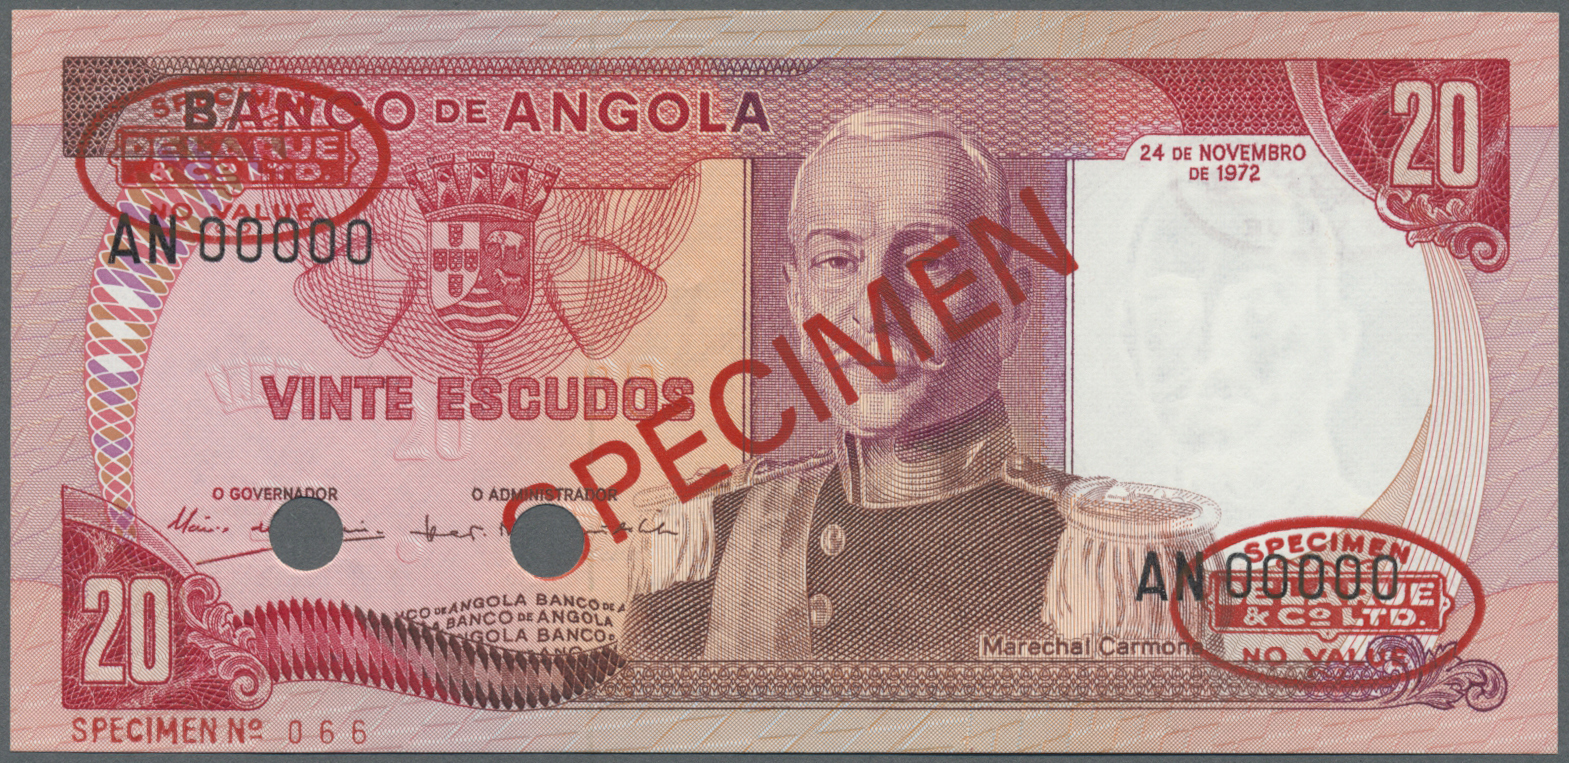 00035 Angola: 20 Escudos 1972 Specimen P. 99s In Condition: UNC. - Angola